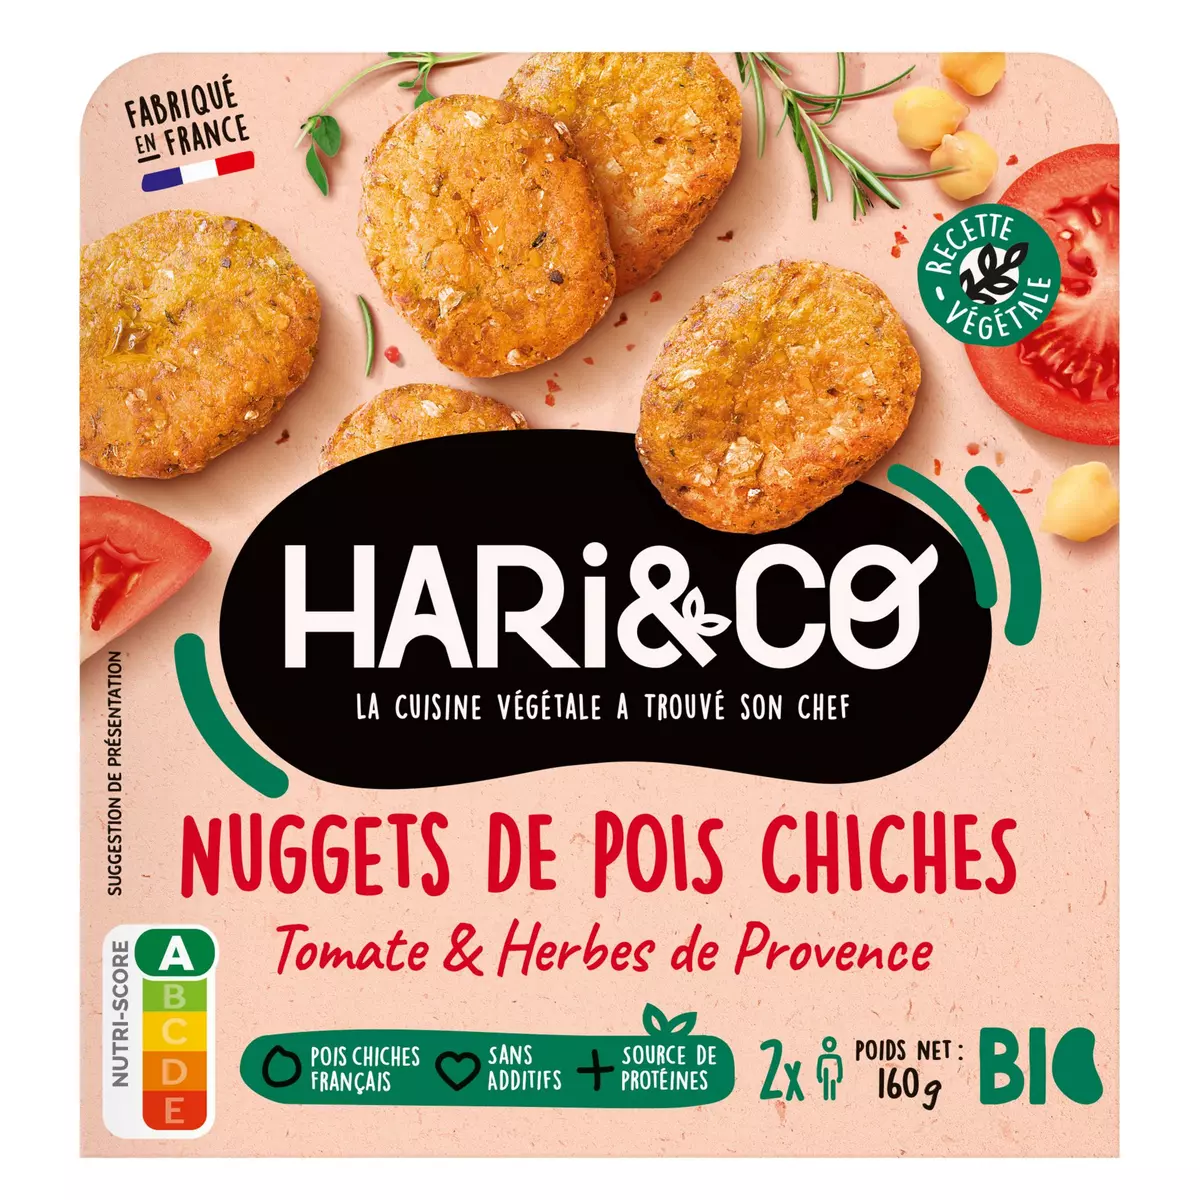 HARI&CO Nuggets de pois chiches, tomates et herbes de provence bio 2 portions 160g